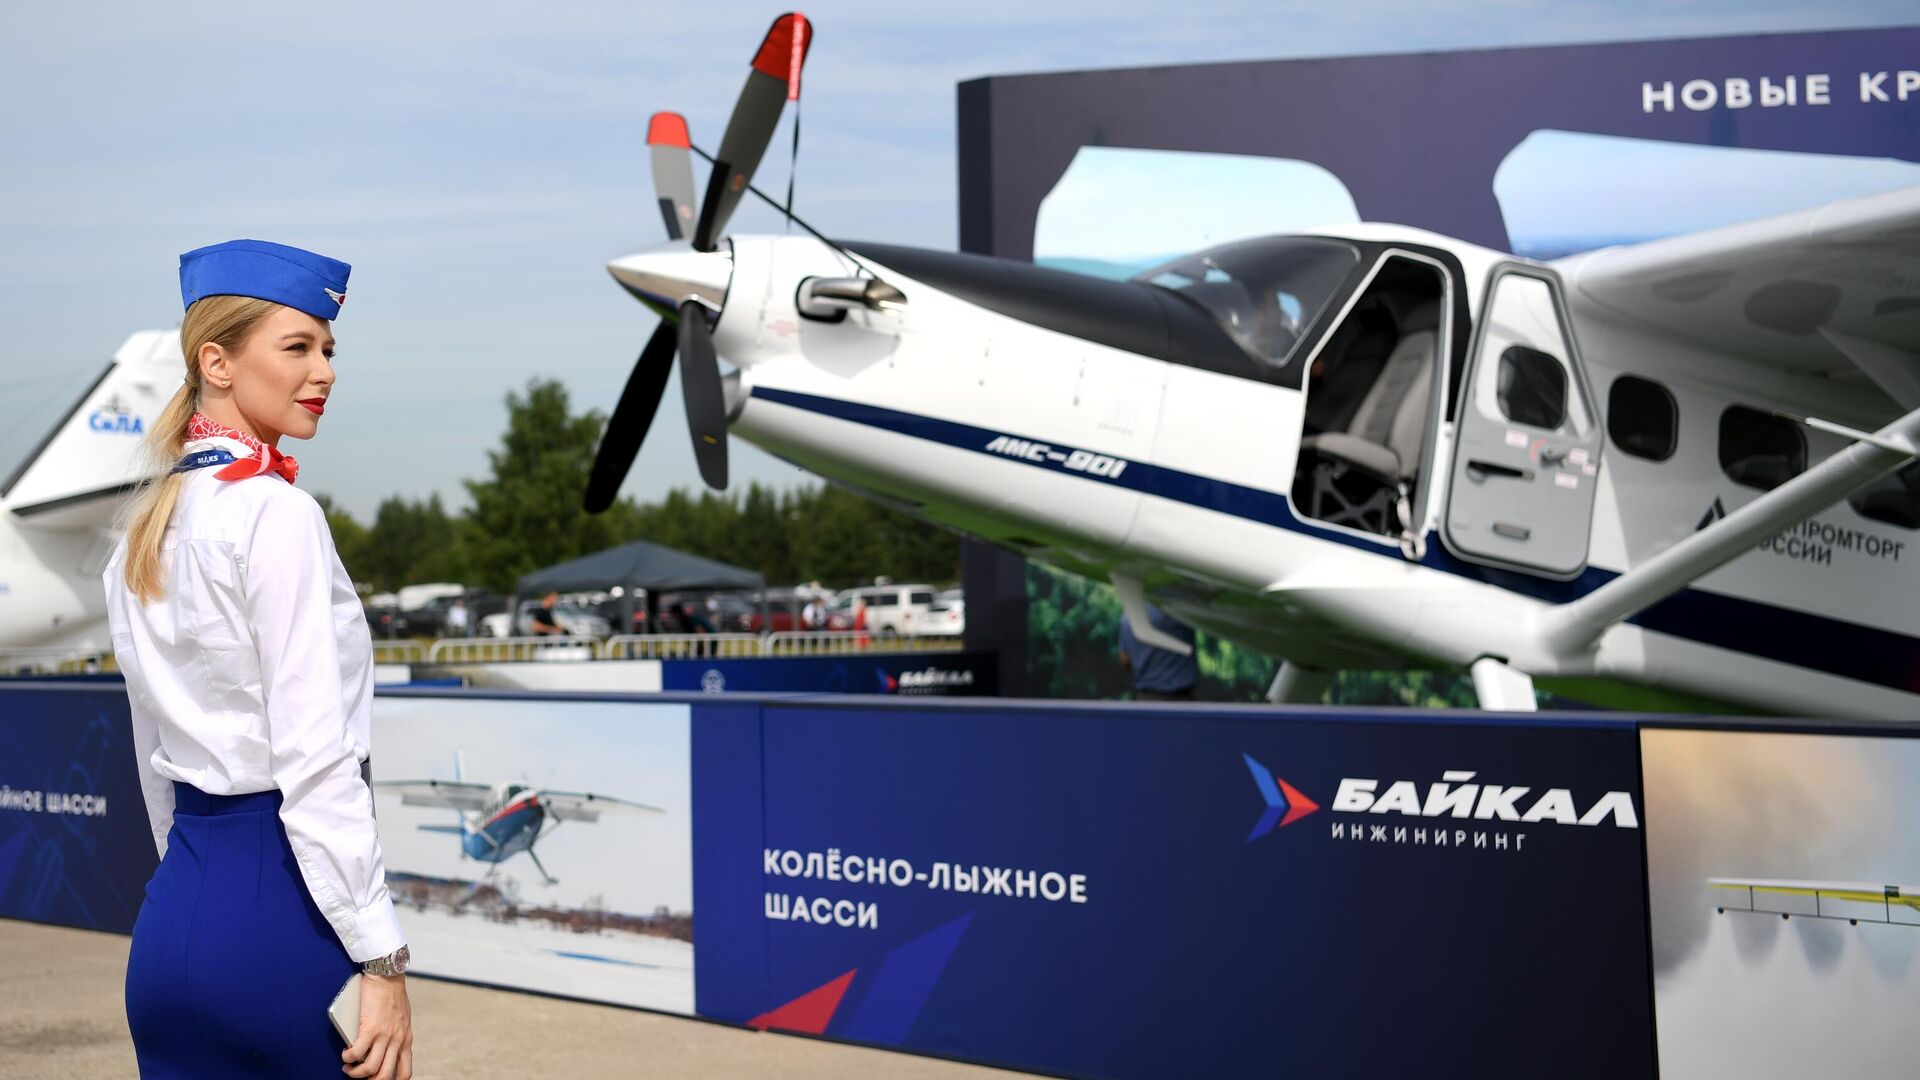 Многоцелевой самолёт ЛМС-901 Байкал, представленный на Международном авиационно-космическом салоне МАКС-2021 - РИА Новости, 1920, 03.09.2021